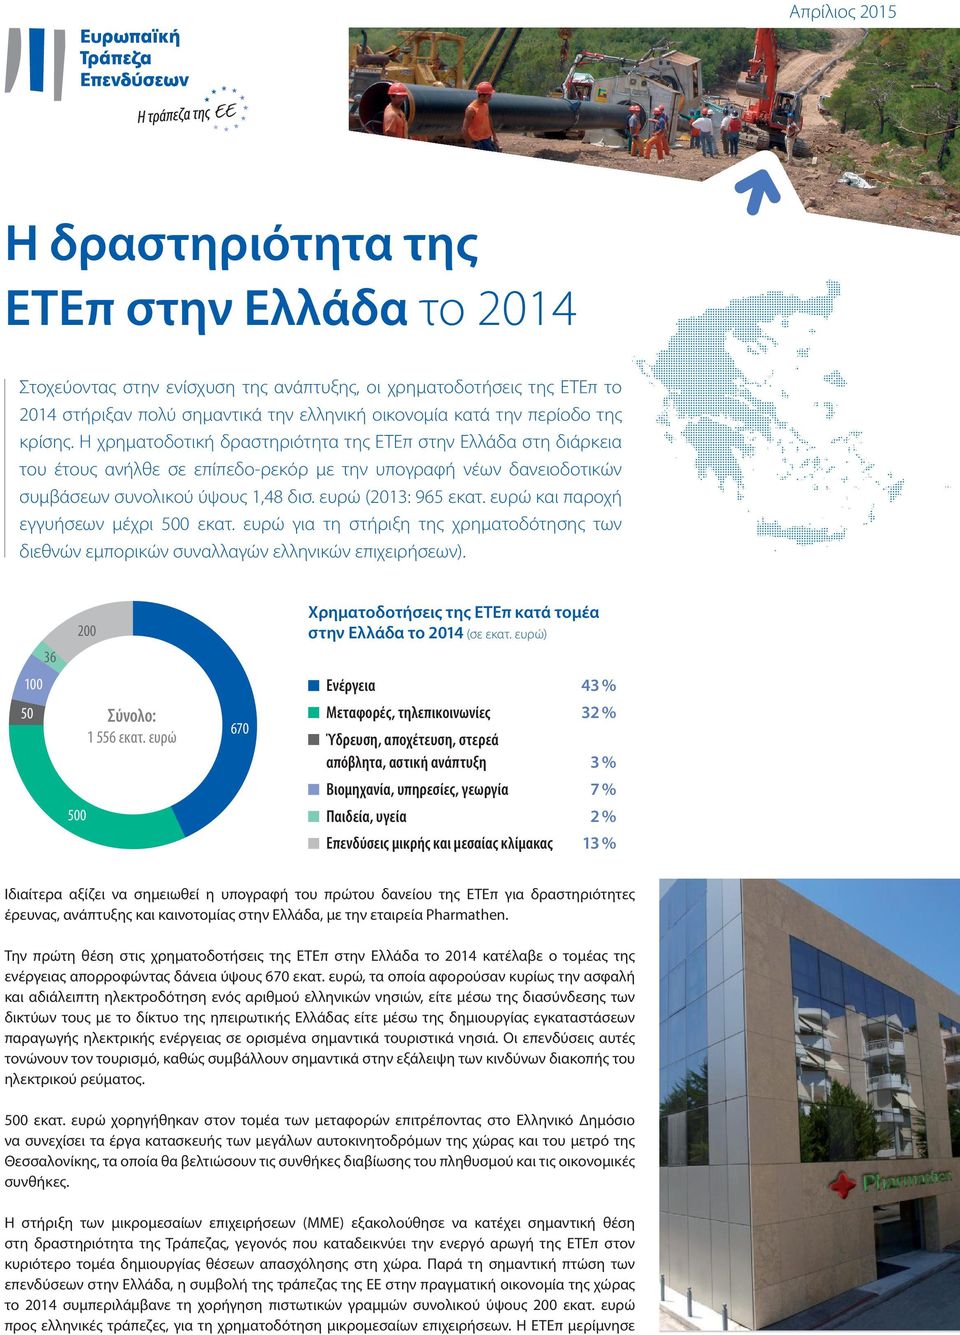 ευρώ (2013: 965 εκατ. ευρώ και παροχή εγγυήσεων μέχρι 500 εκατ. ευρώ για τη στήριξη της χρηματοδότησης των διεθνών εμπορικών συναλλαγών ελληνικών επιχειρήσεων).